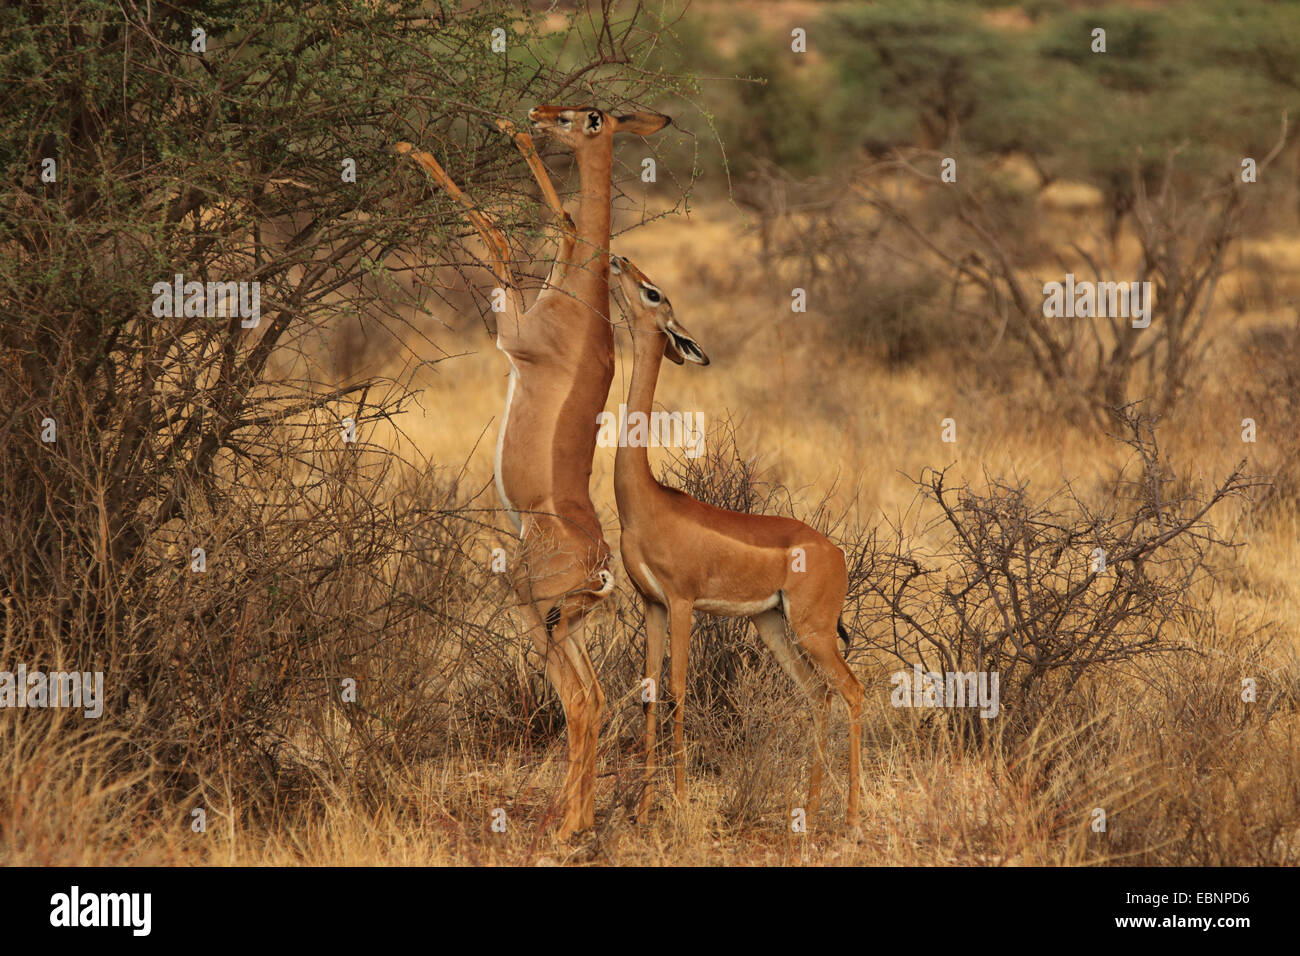 Gerenuk (Litocranius walleri), deux gerenuks se nourrissant d'un buisson, Kenya, Masai Mara National Park Banque D'Images